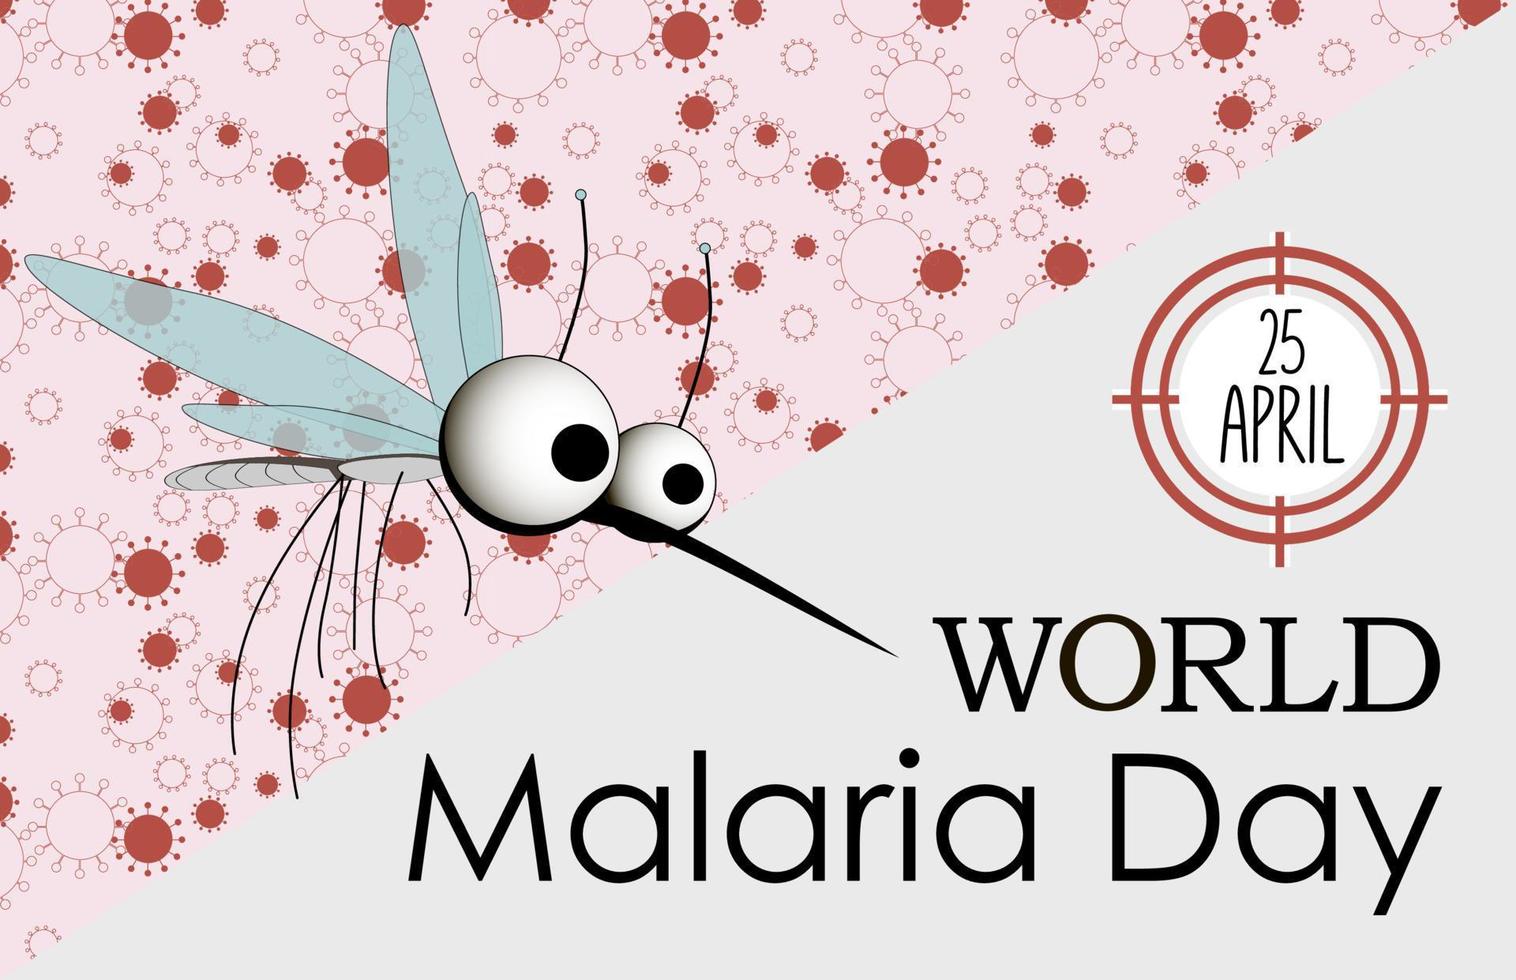 värld malaria dag vektor, illustration av malaria, och de värld för design värld malaria dag.vektor baner och affisch design. vektor